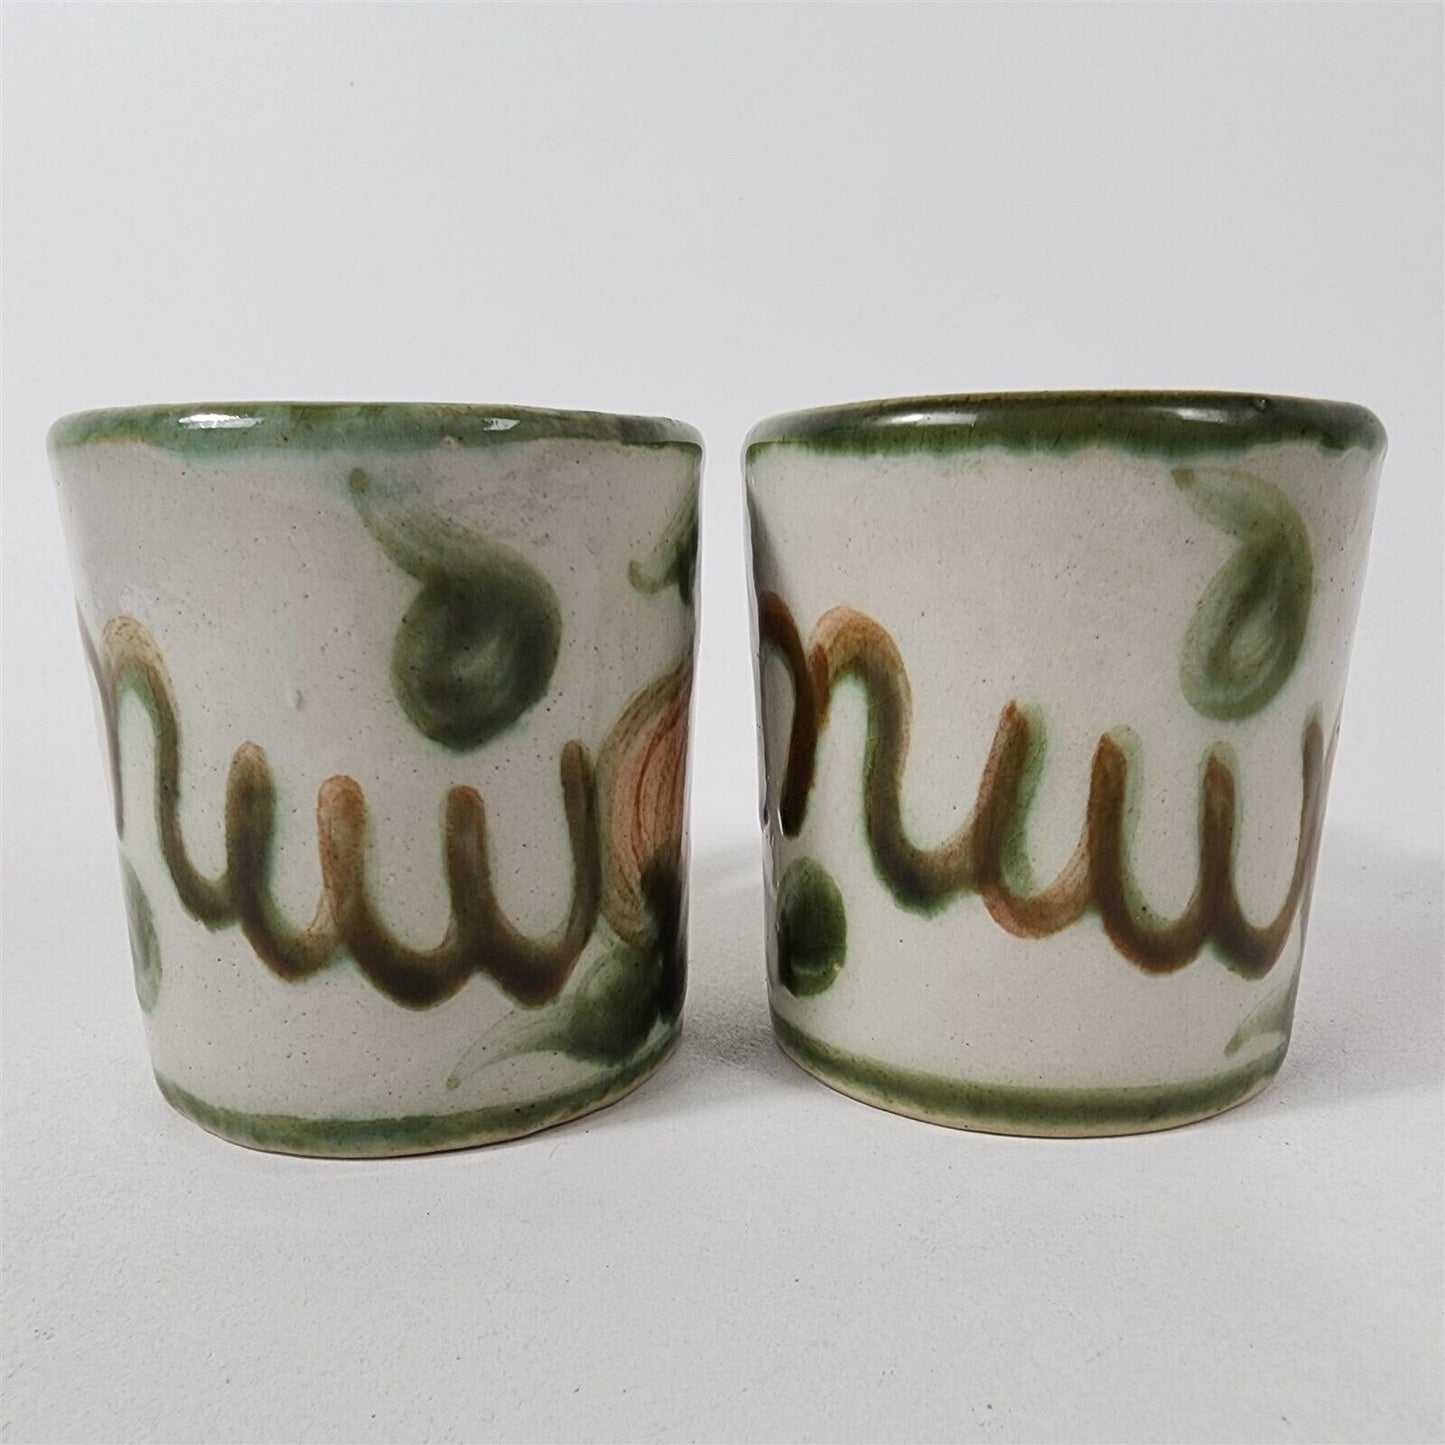 2 John B Taylor JBT Harvest Pear Stoneware Vintage Coffee Mugs Cups - 3 1/4"